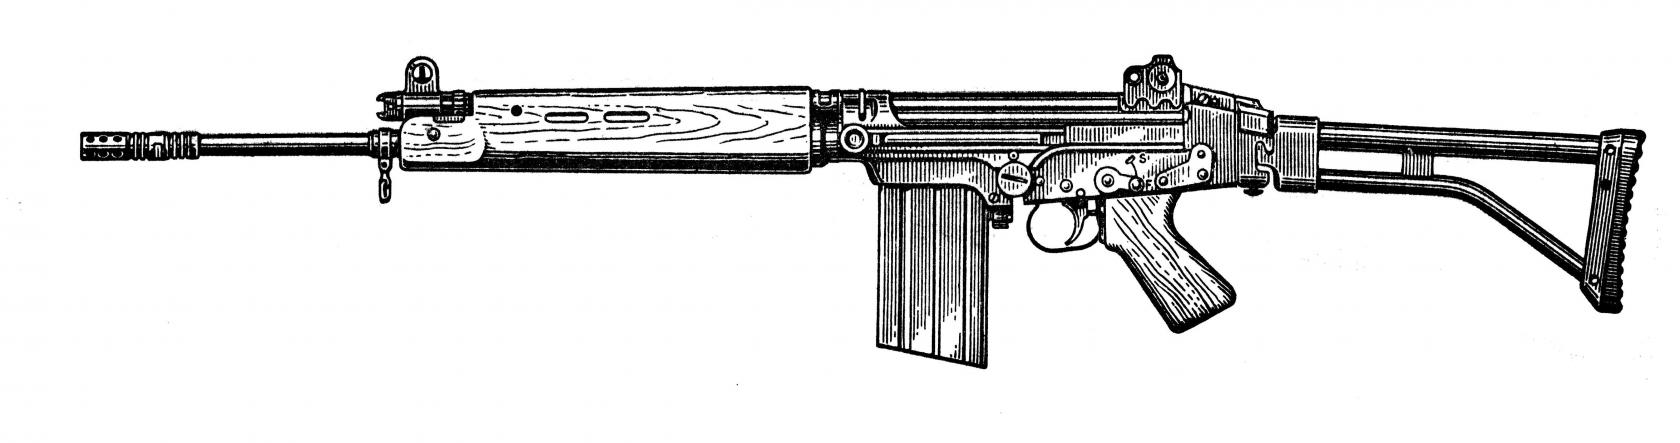 Стрелковое оружие Грузии МГК (Мир Грузинского Королевства)